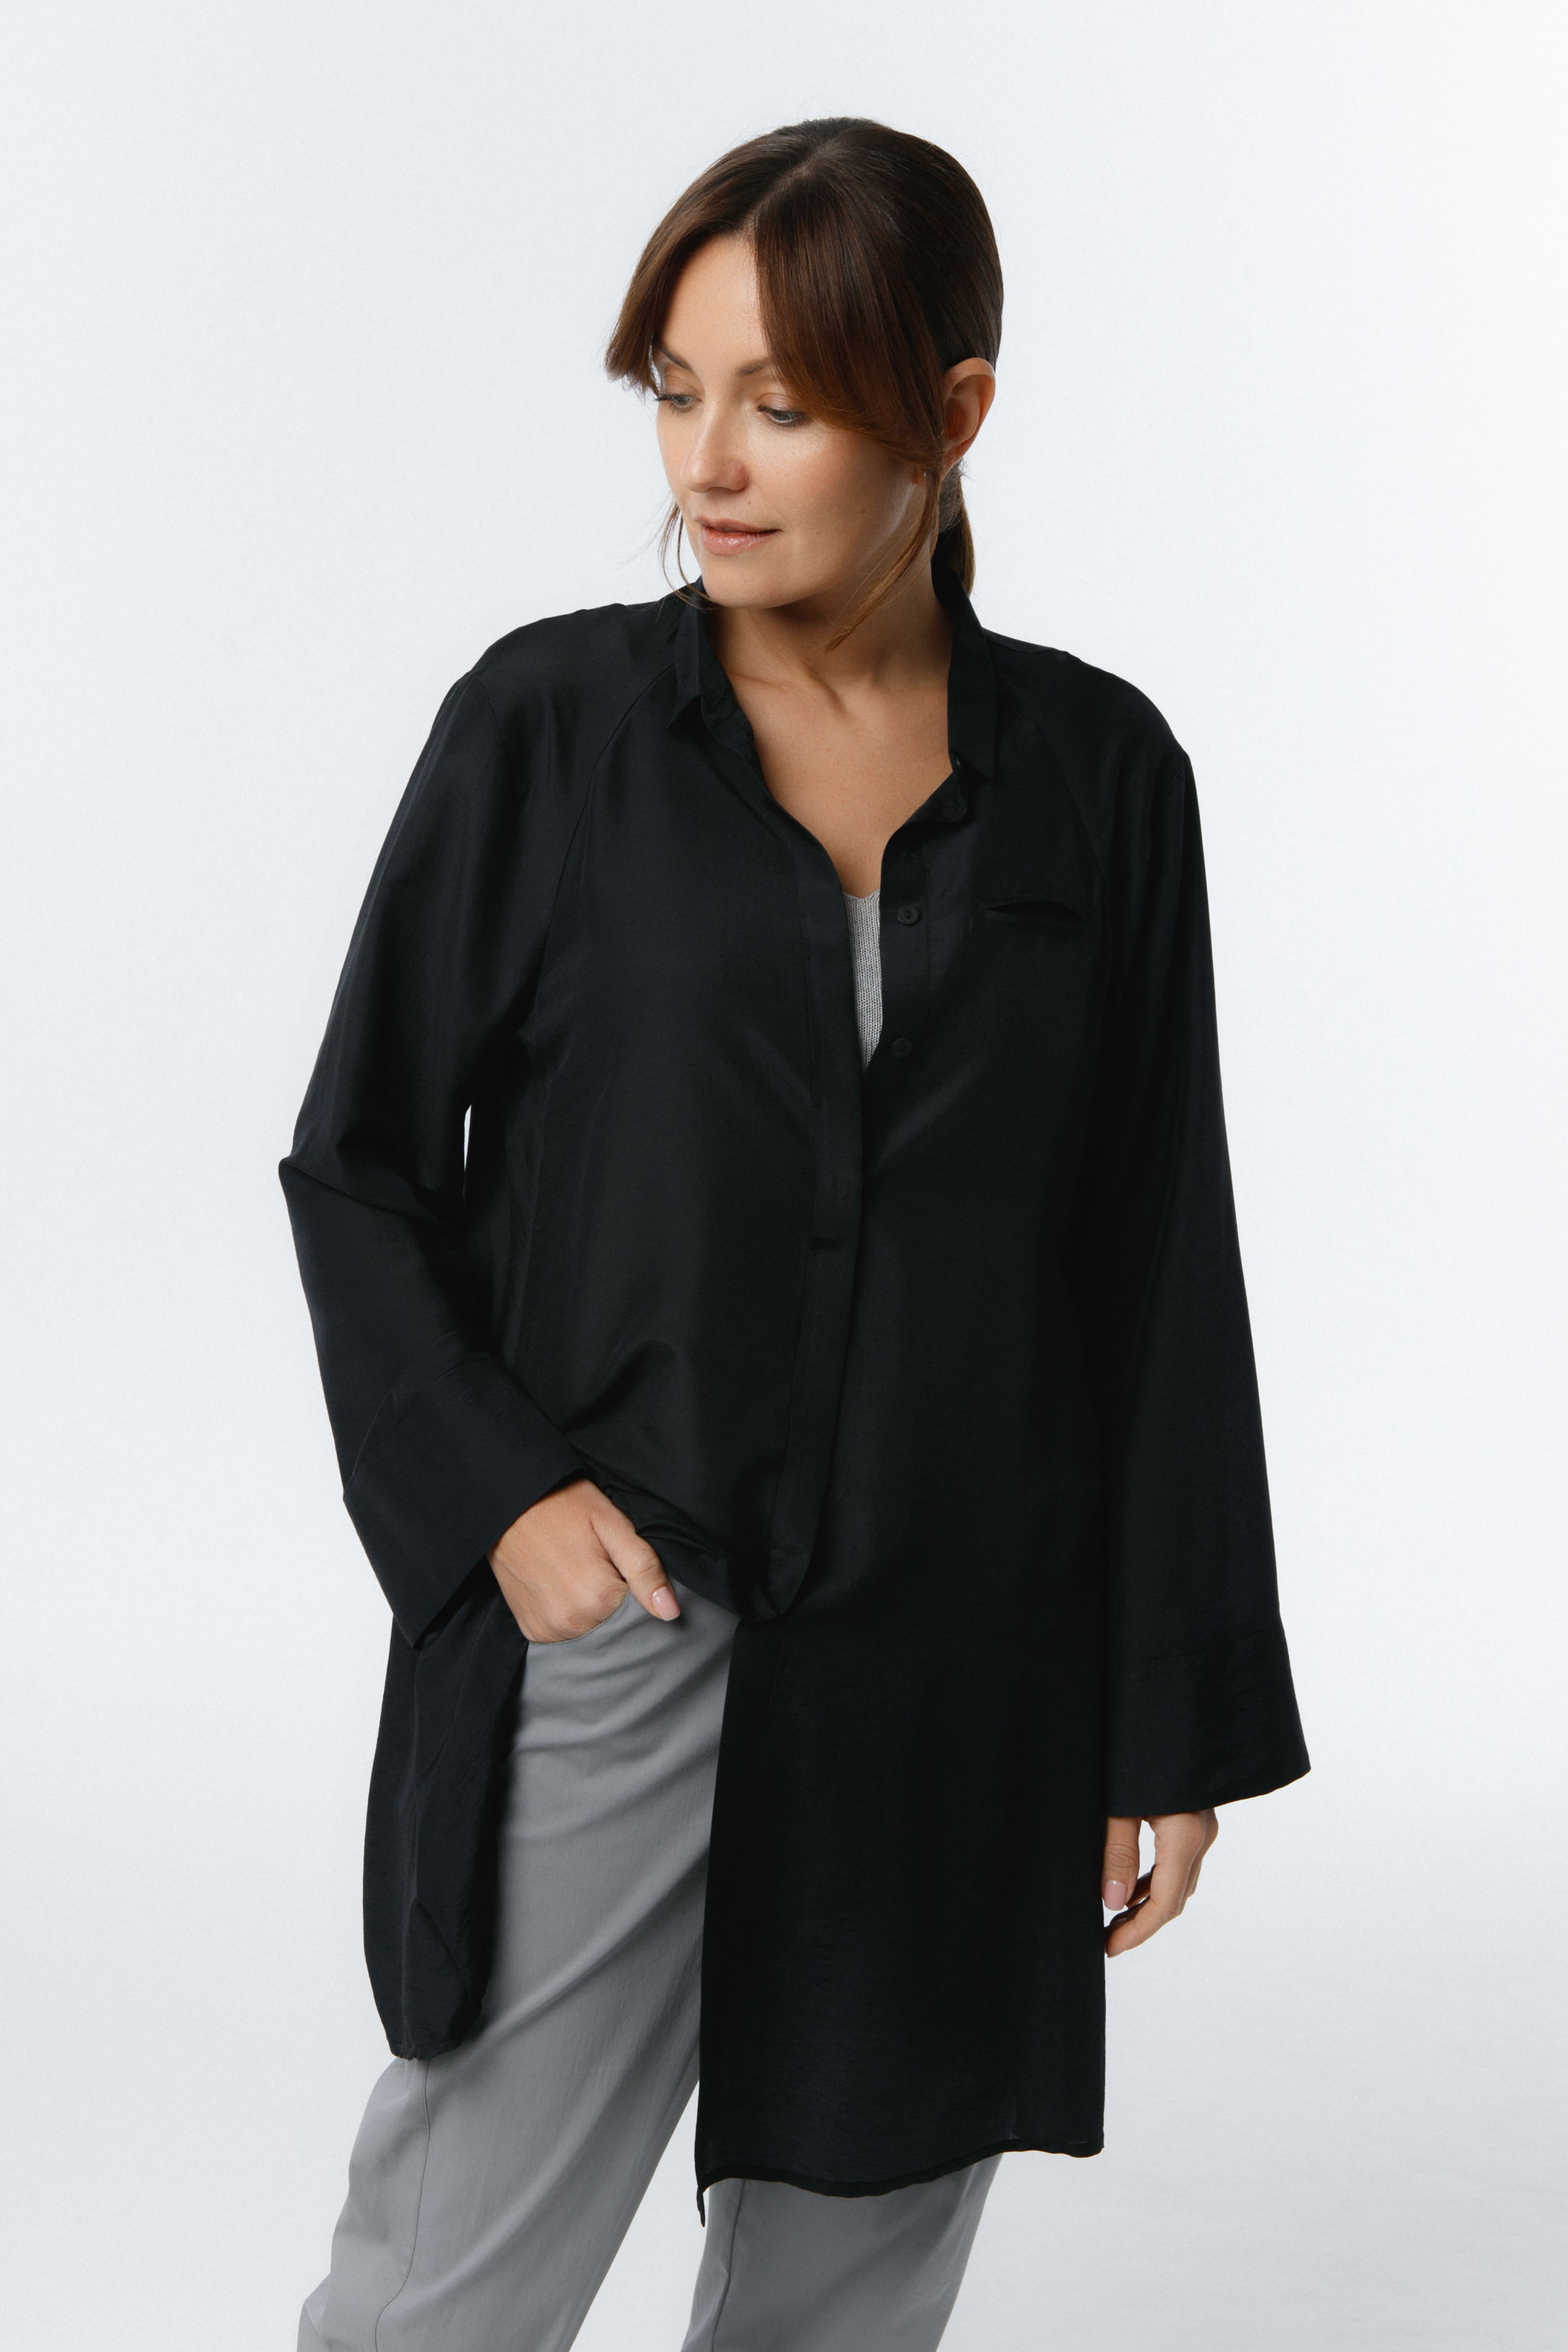 Рубашка шёлк 00 Черный (noir) от Lesel (Лесель)! Заказывайте по ✆ 8 (800) 777 02 37